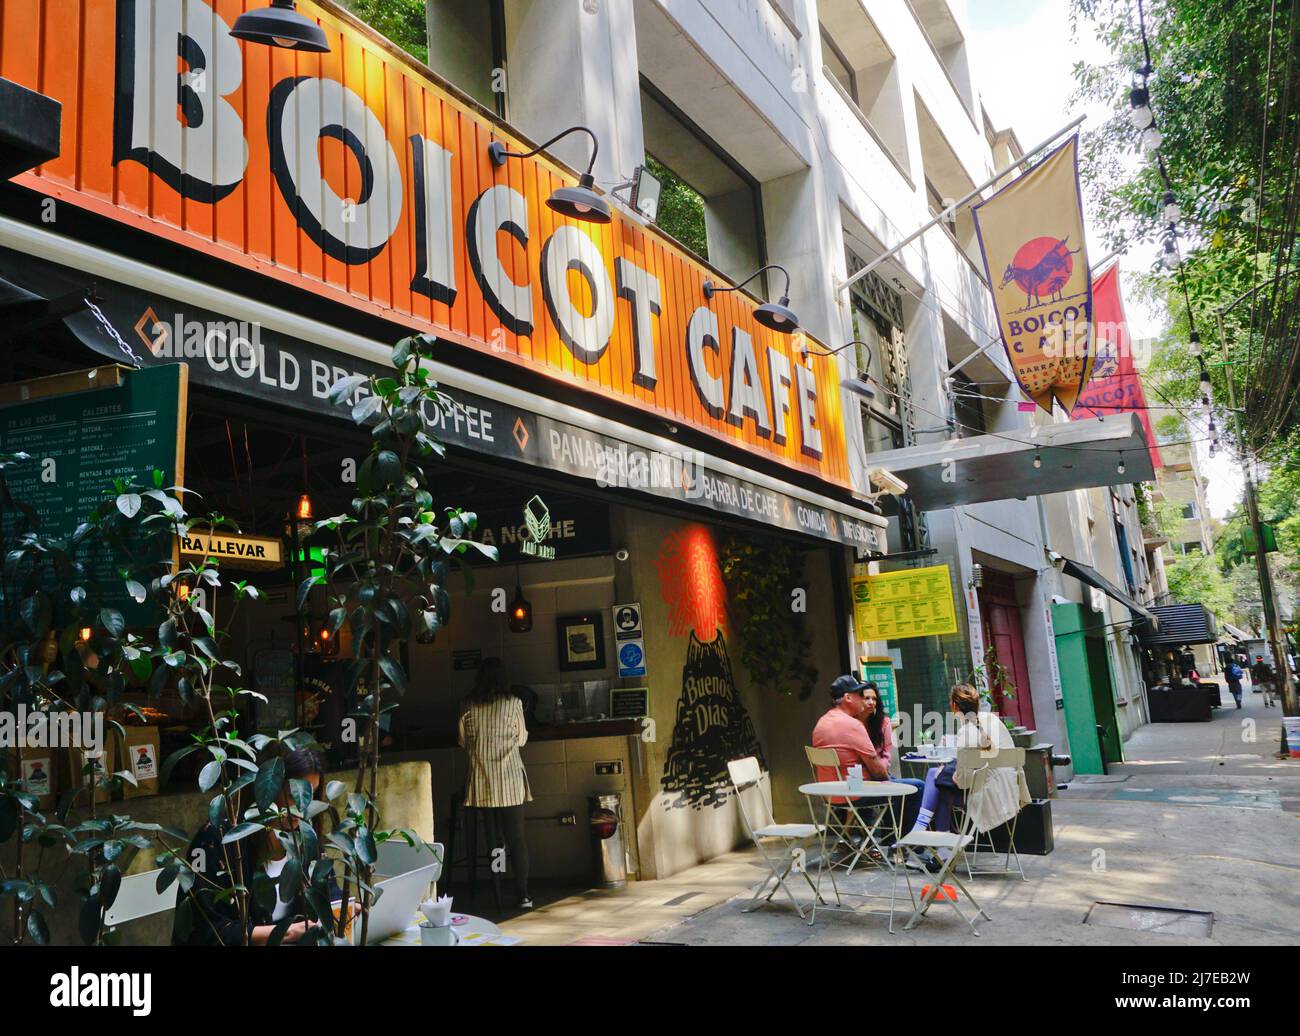 Boicot Cafe im Colonia Condesa Viertel von Mexiko-Stadt, Mexiko. Stockfoto